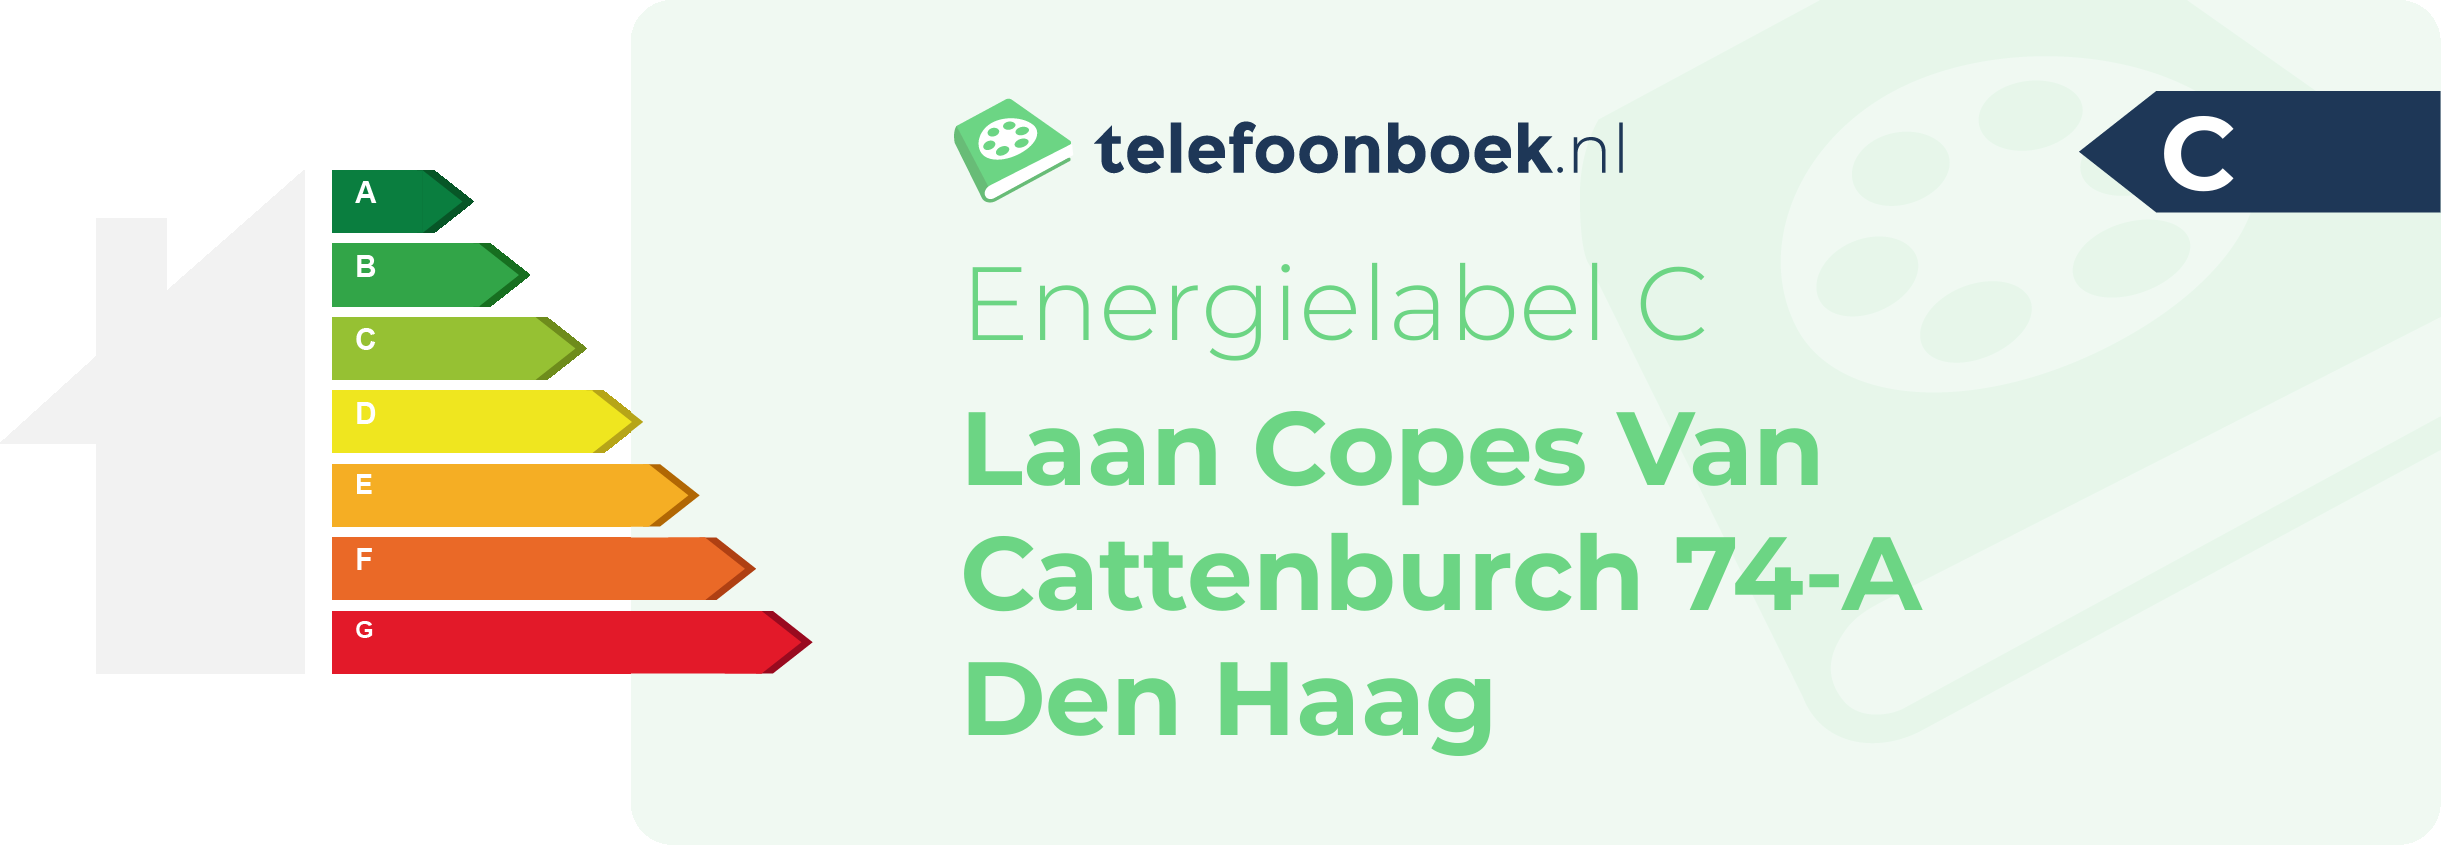 Energielabel Laan Copes Van Cattenburch 74-A Den Haag